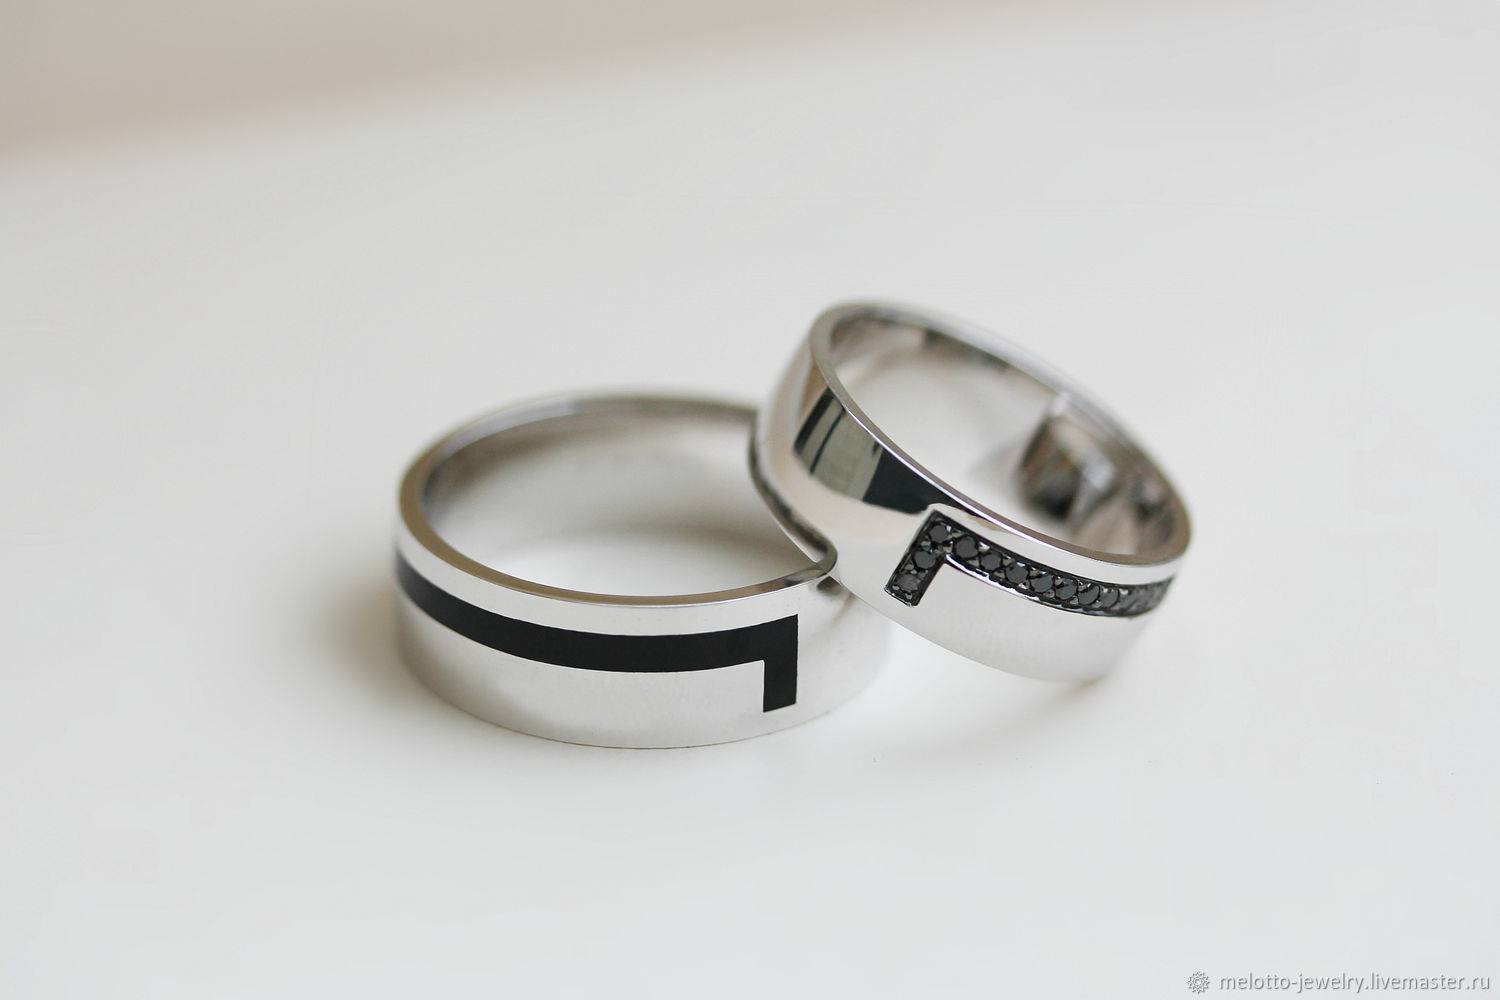 Обручальные кольца из золота и серебра с бриллиантами | ladycharm.net - женский онлайн журнал